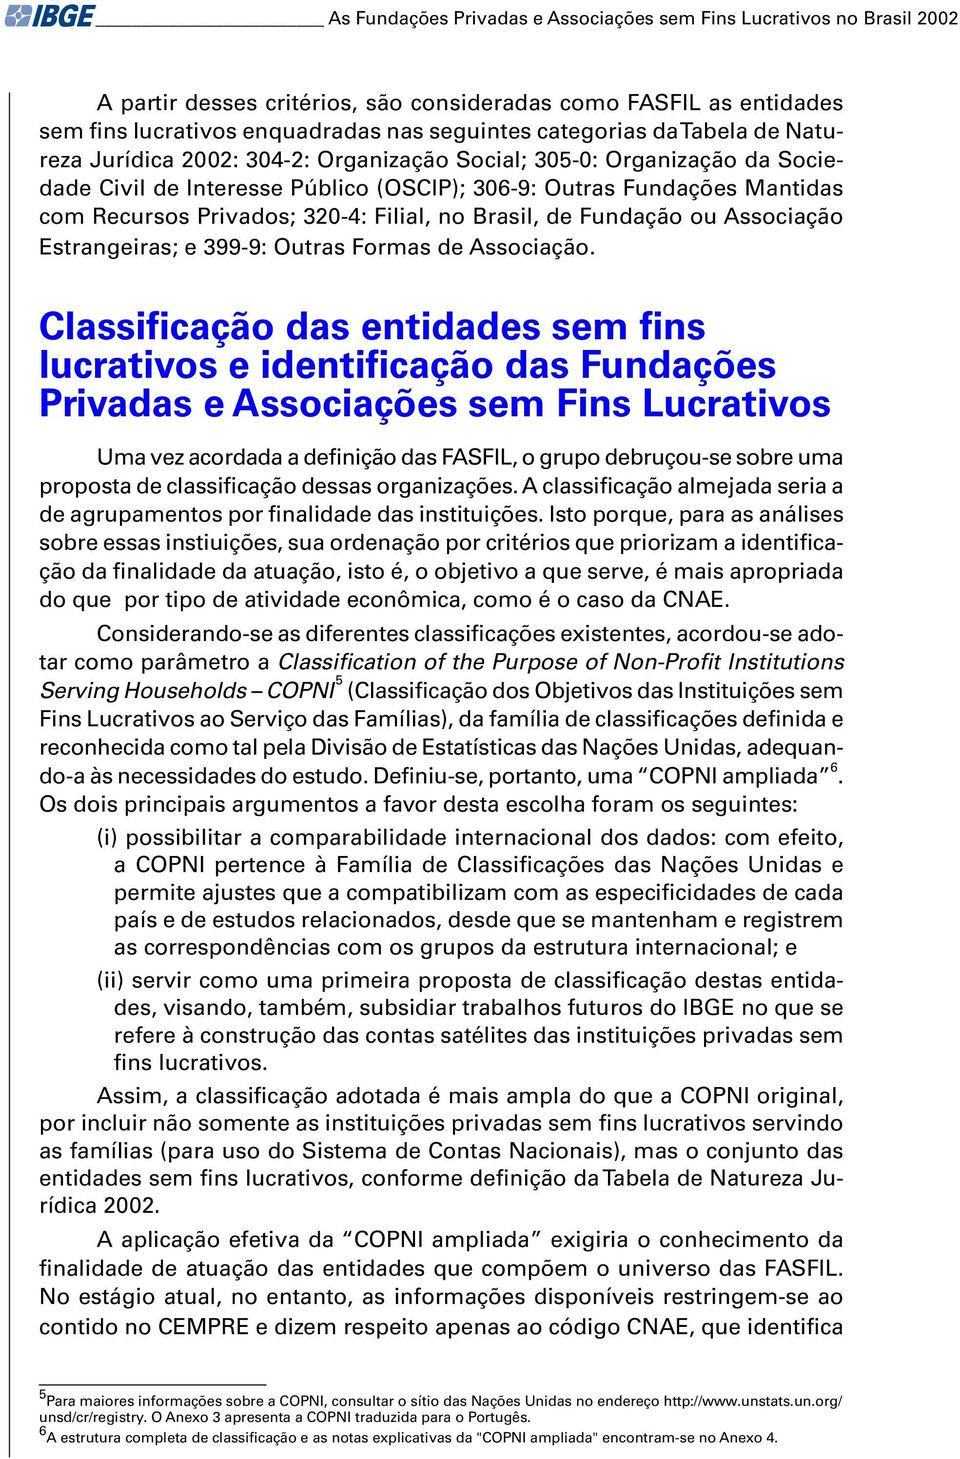 no Brasil, de Fundação ou Associação Estrangeiras; e 399-9: Outras Formas de Associação.